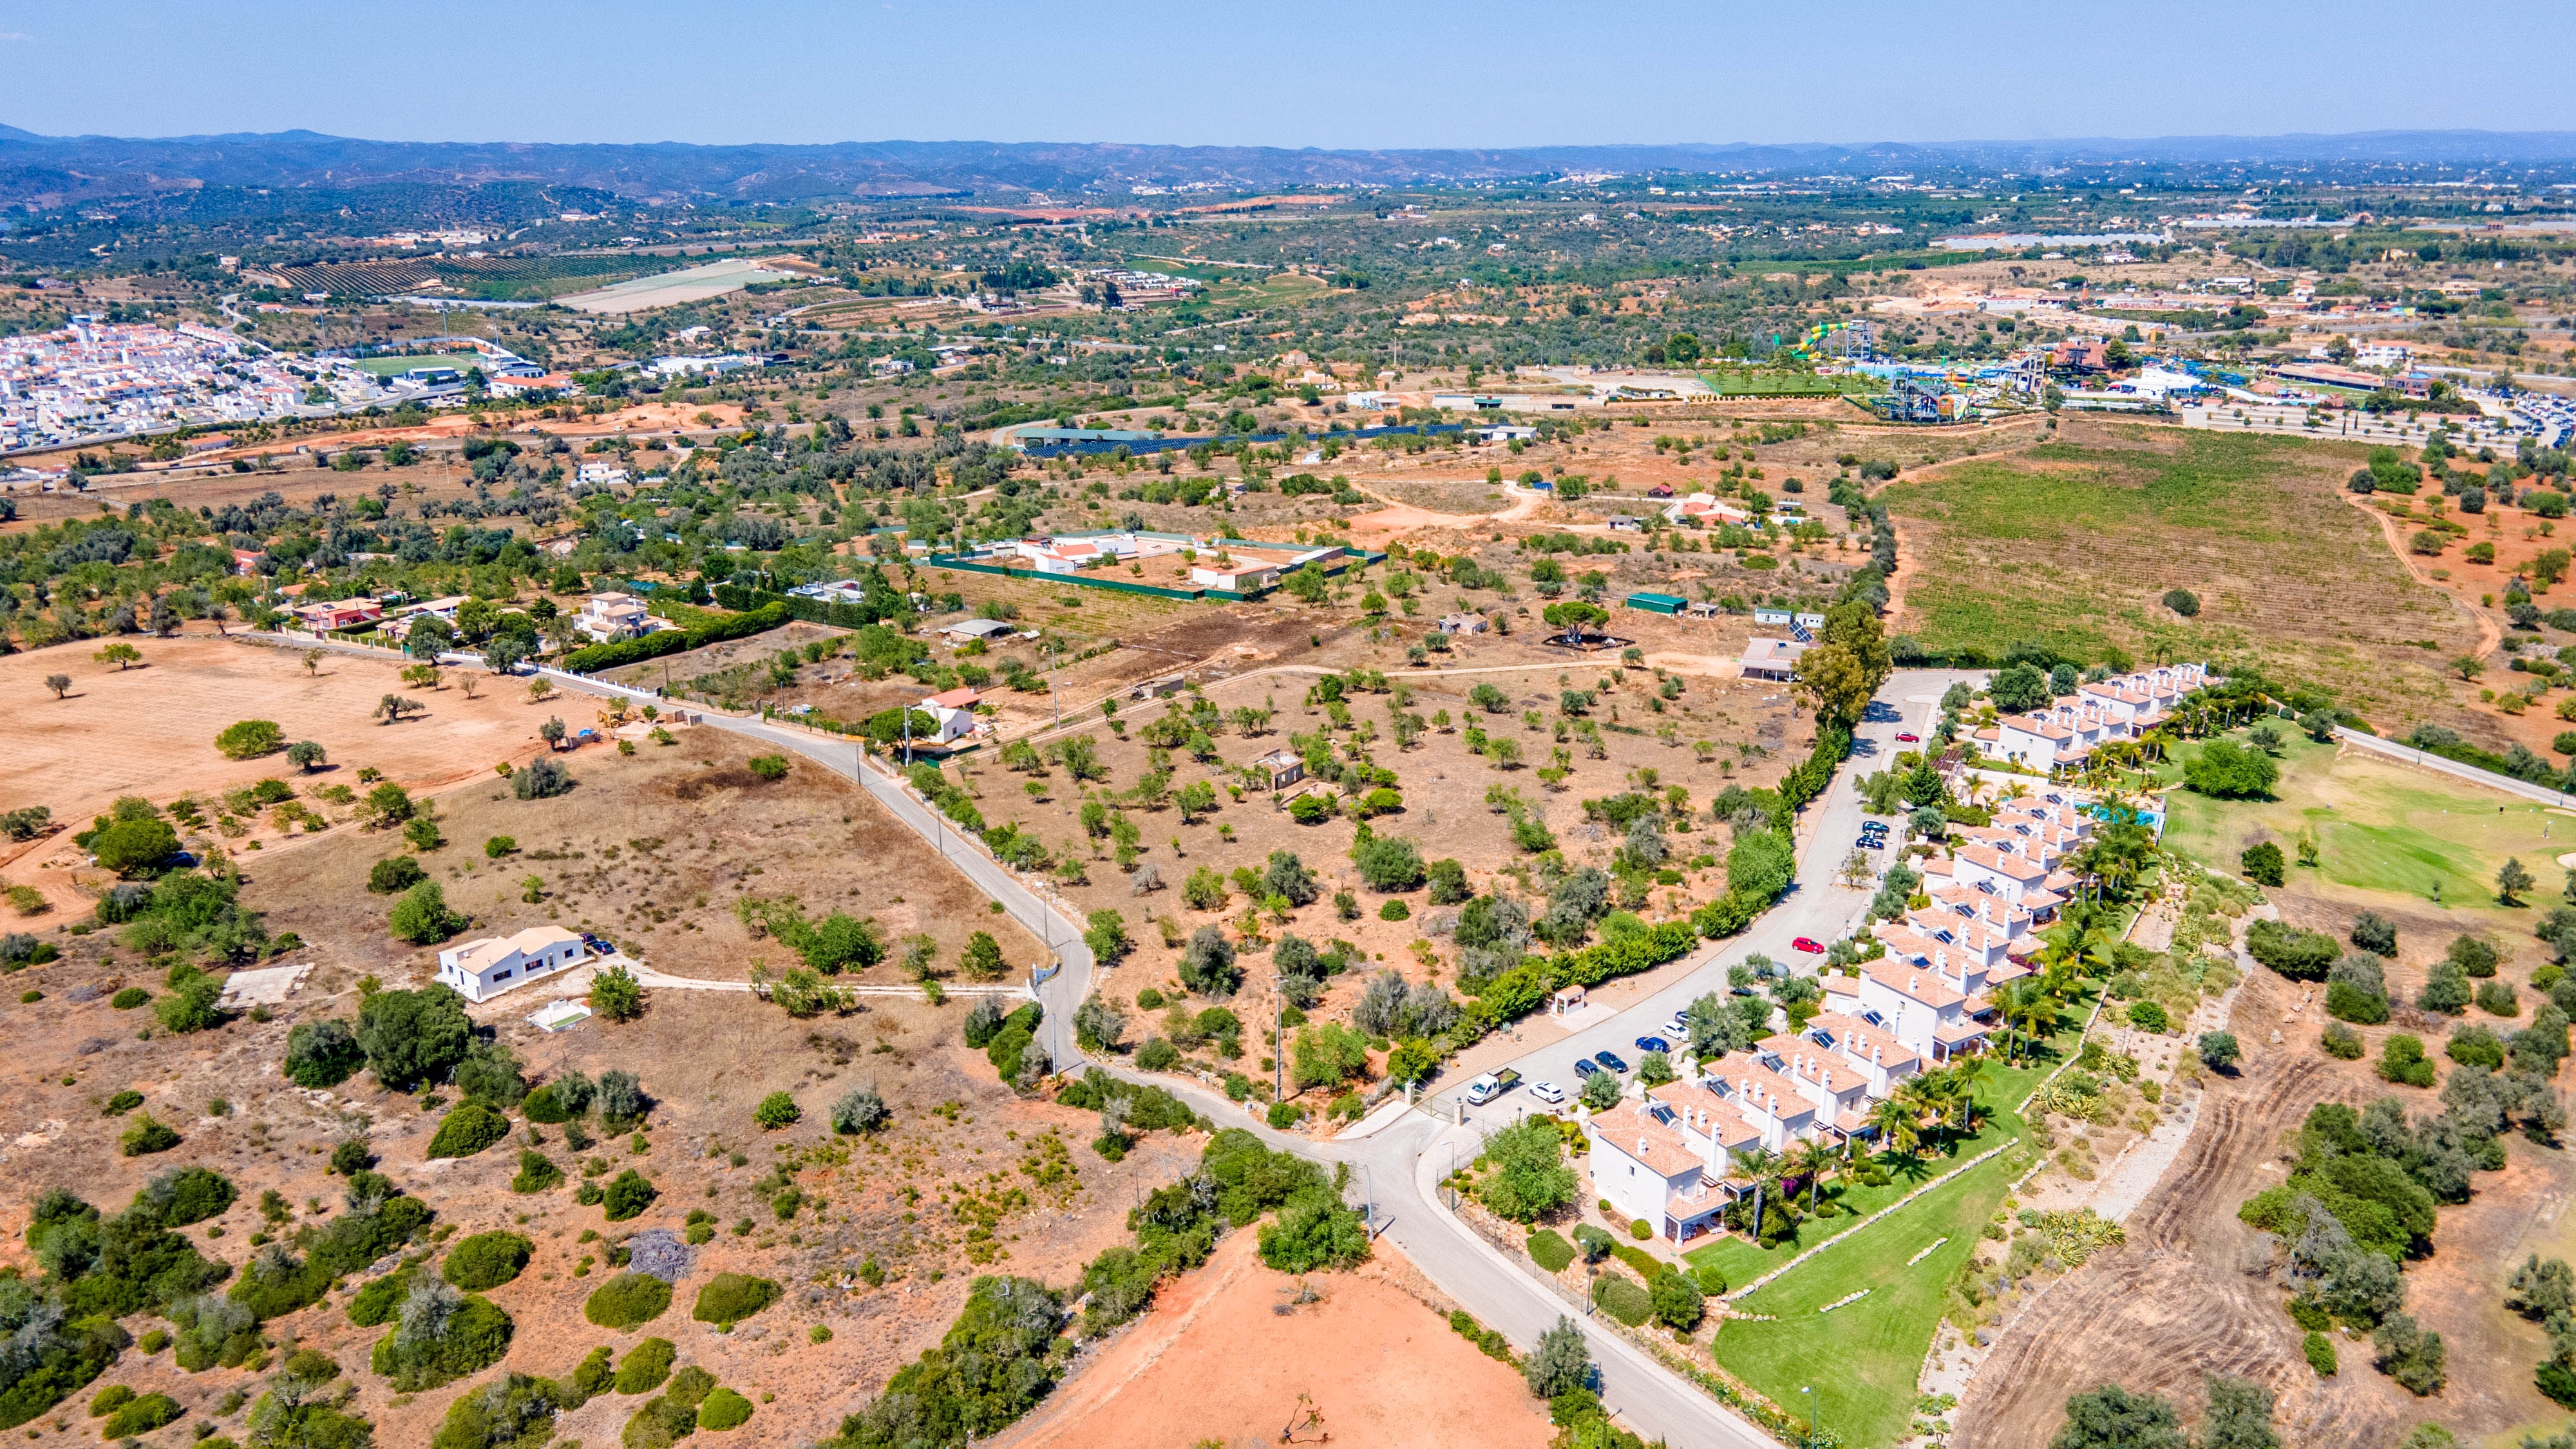 Terrain avec un permis de construire pour 18 propriétés, Lagoa, Algarve Ouest | PPP2228 Superbe emplacement à proximité de la prestigieuse académie de golf de Vale de Pinta et accès à toutes les commodités.